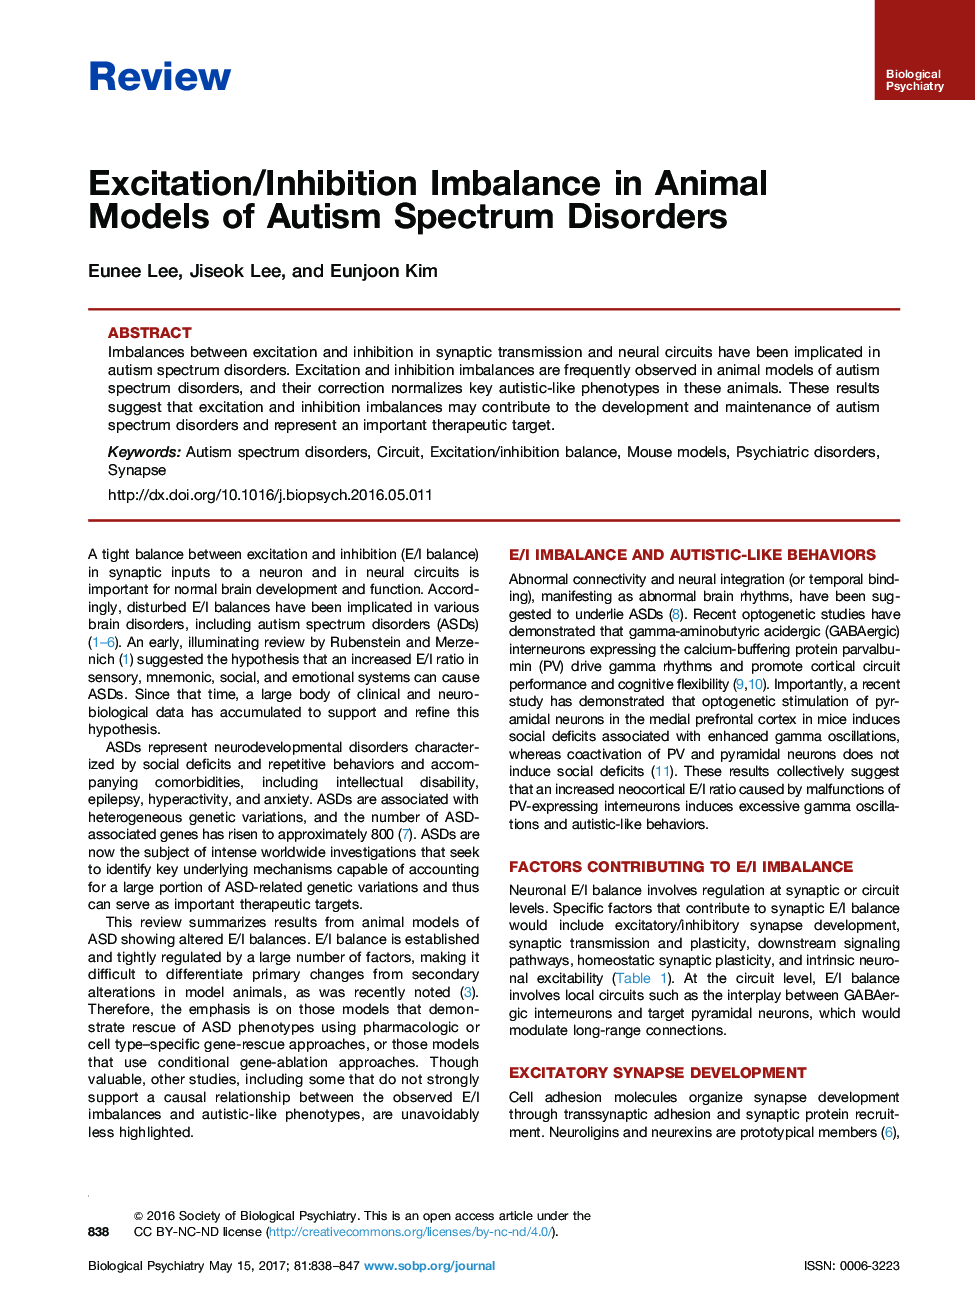 اختلال در تجدید نظر / عدم تعادل در مدل های حیوانی اختلالات طیف اوتیسم 